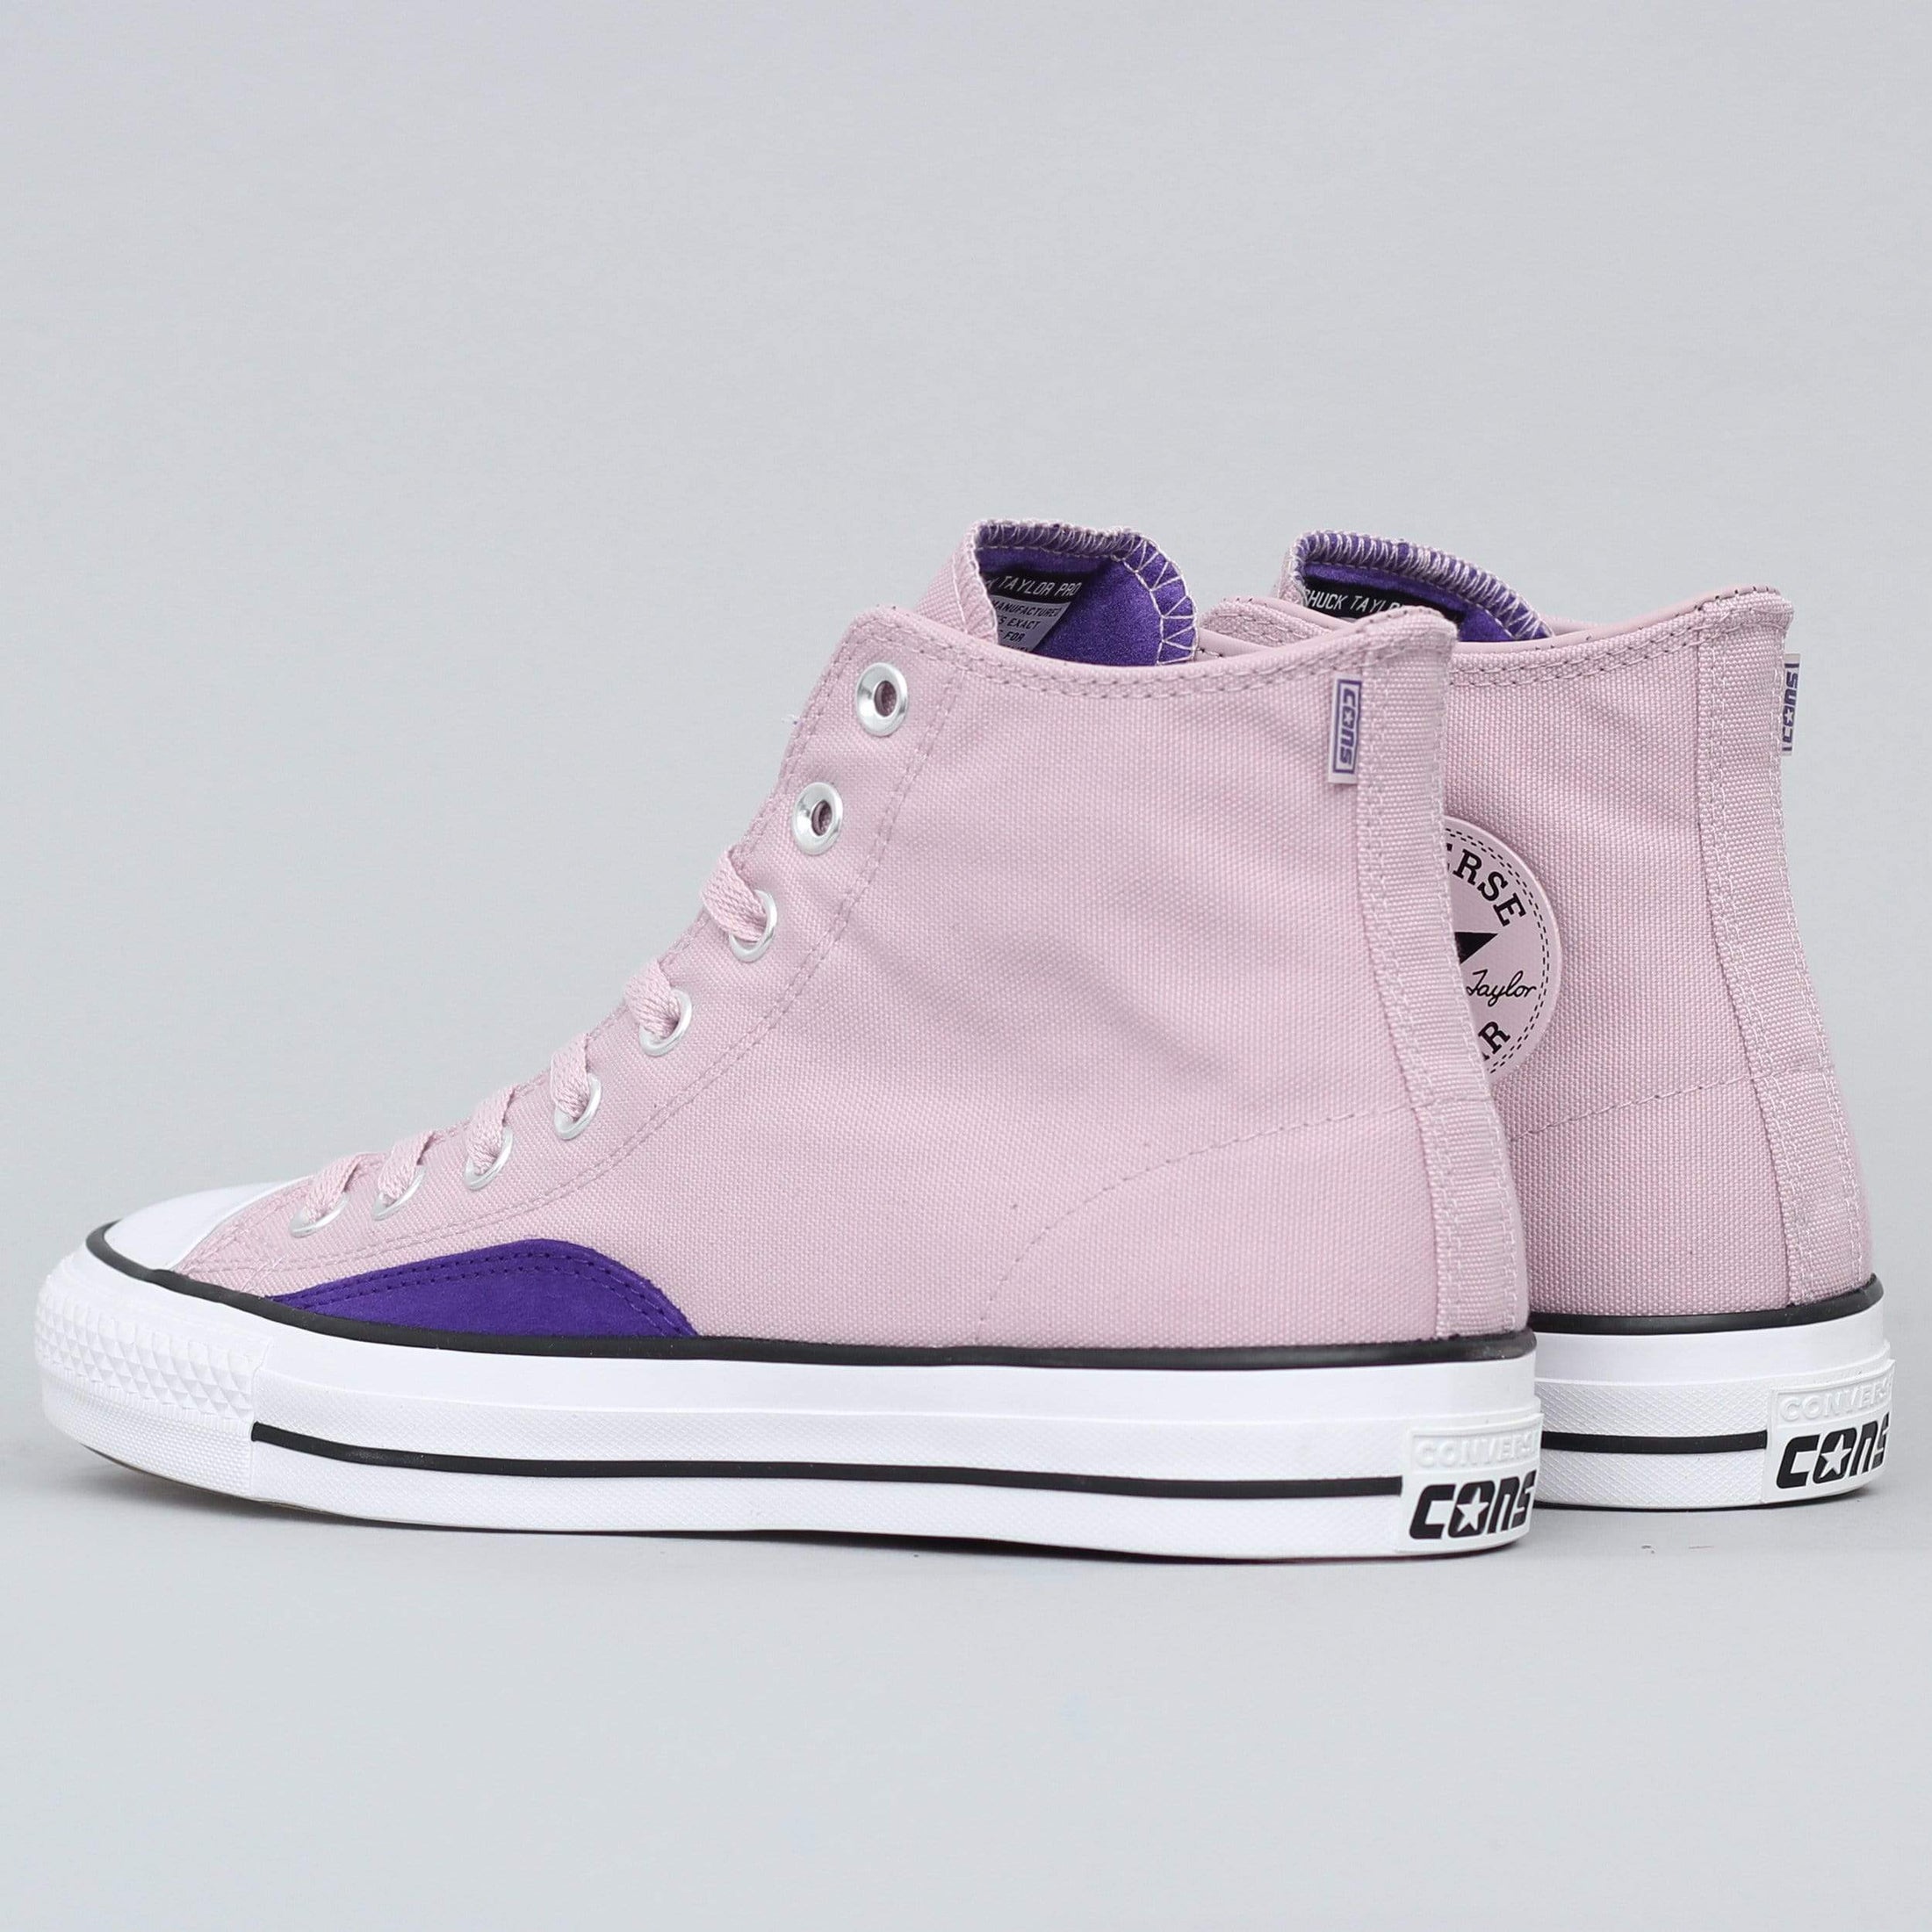 Converse CTAS Pro OP Hi Shoes Plum Chalk / Court Purple / White